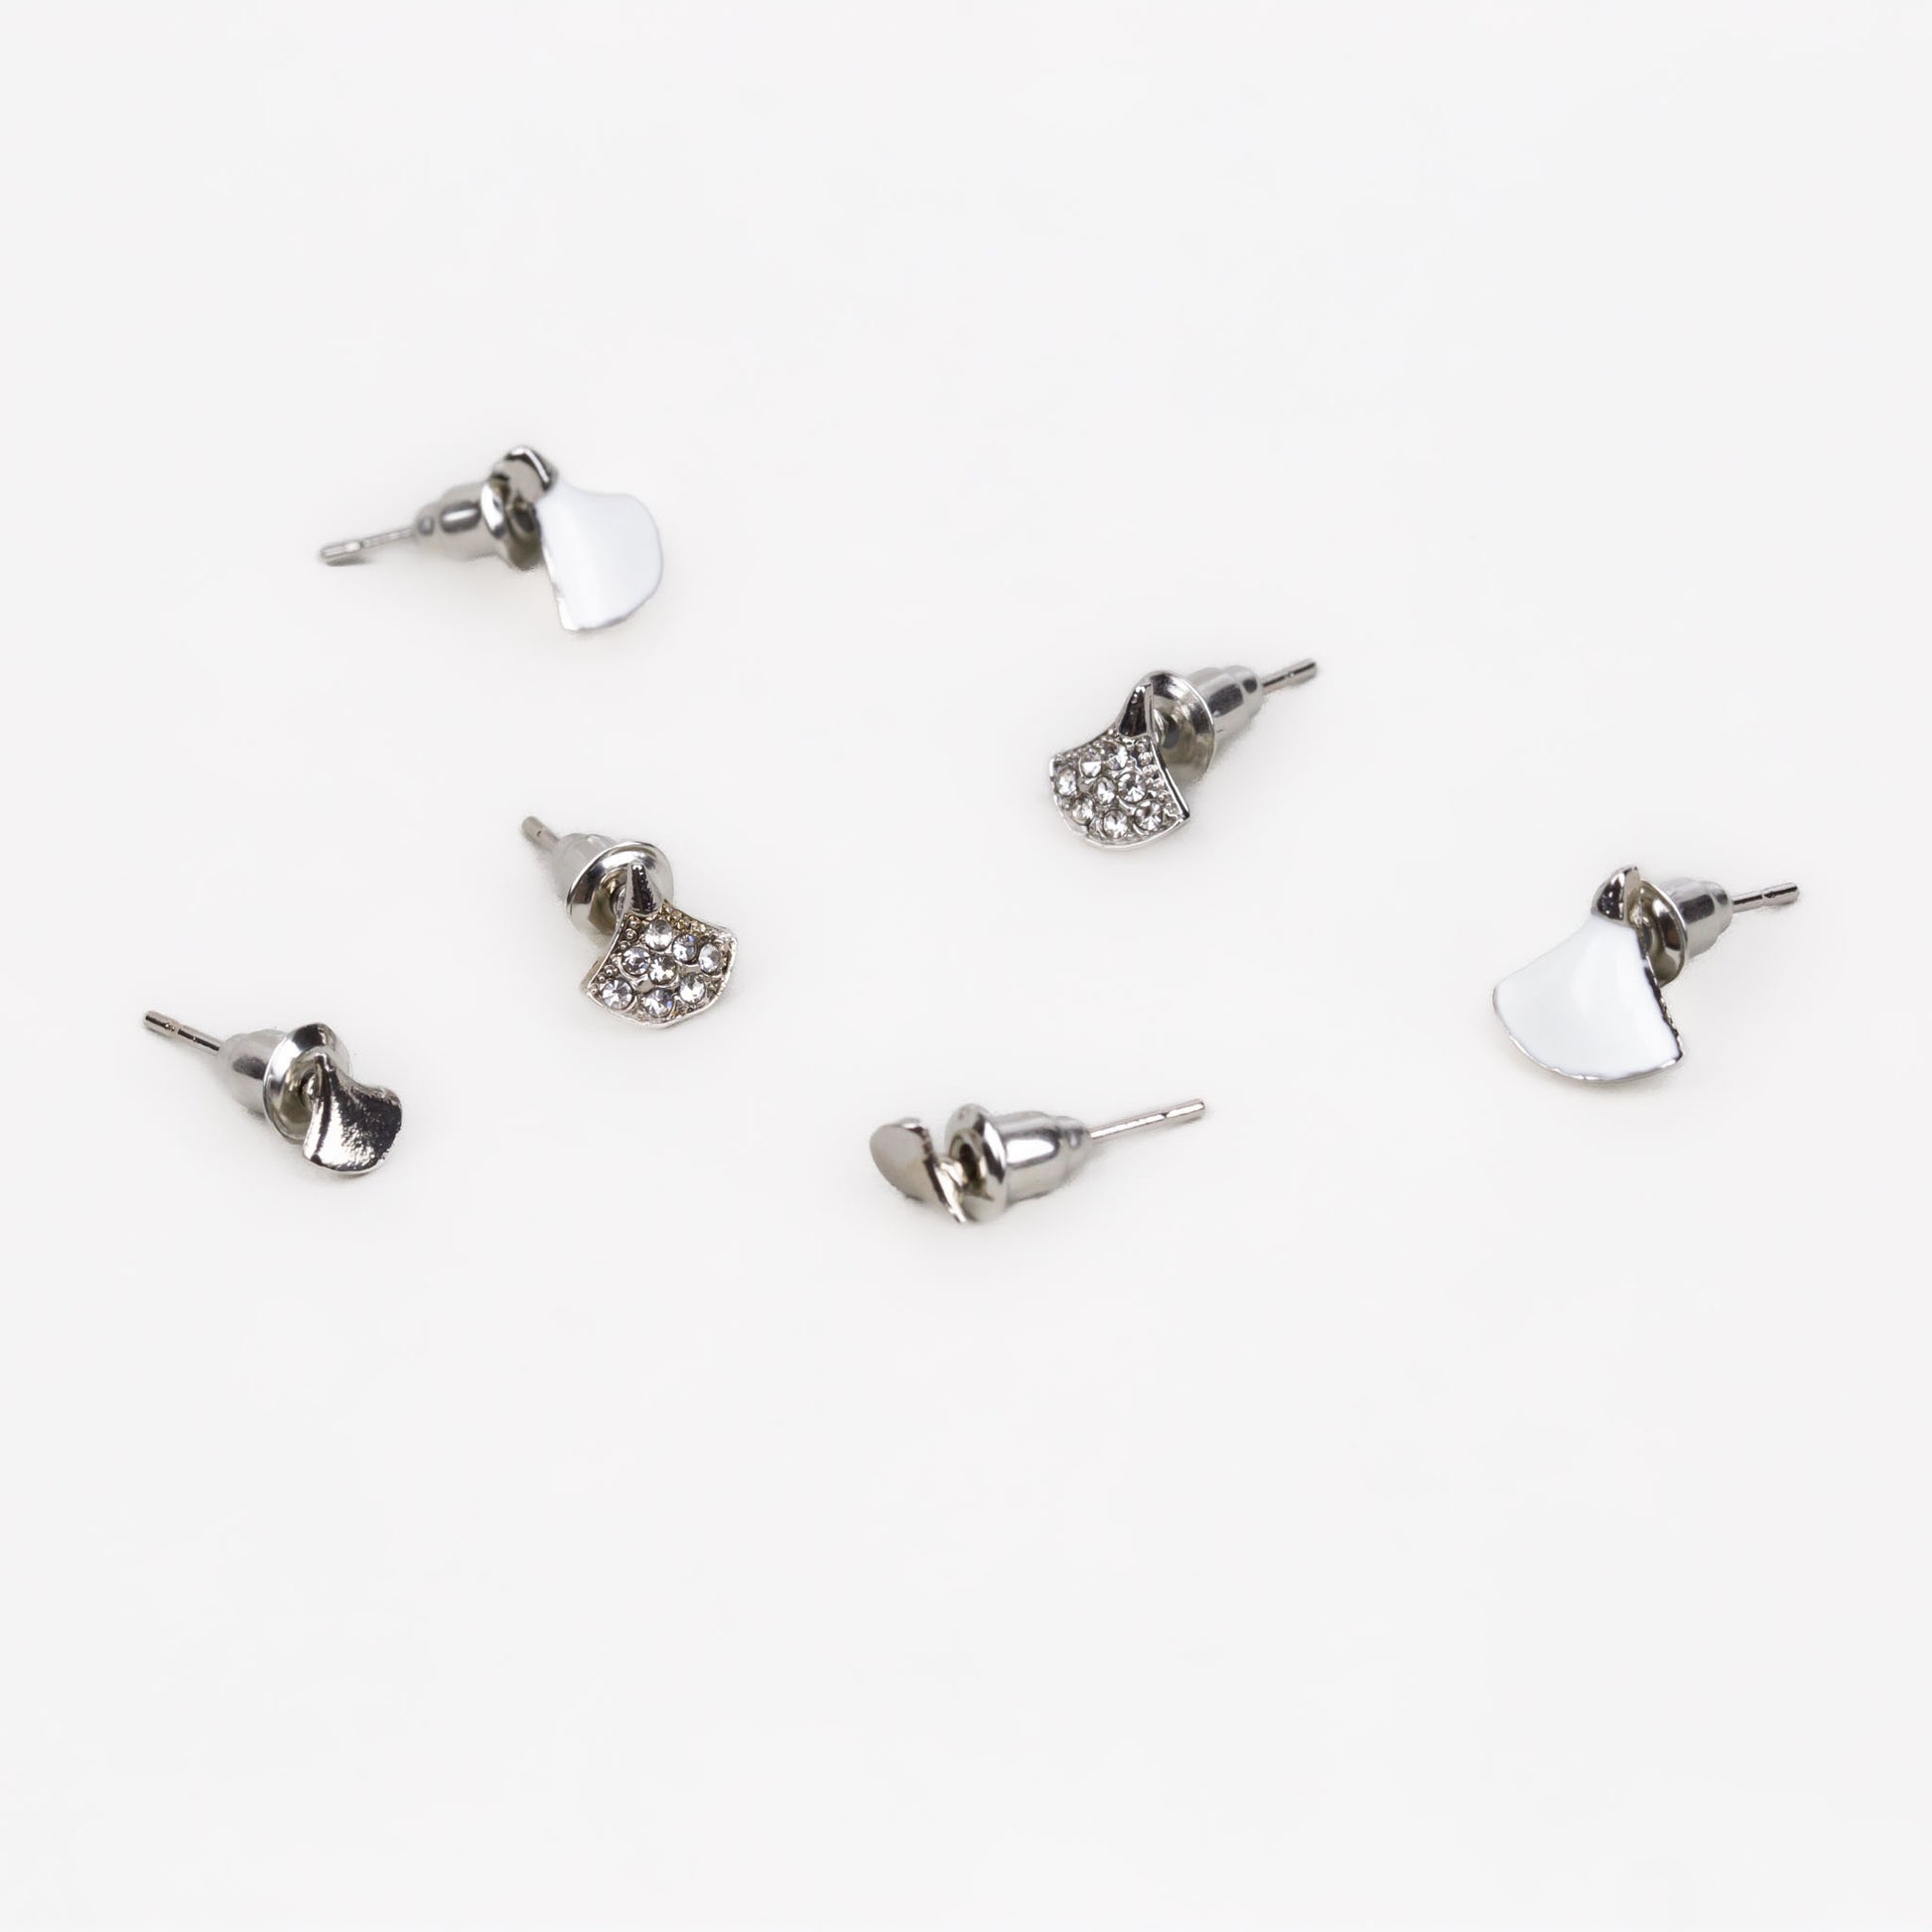 Cercei mici discreți în formă de evantai cu ștrasuri, set 3 perechi - Argintiu, Alb